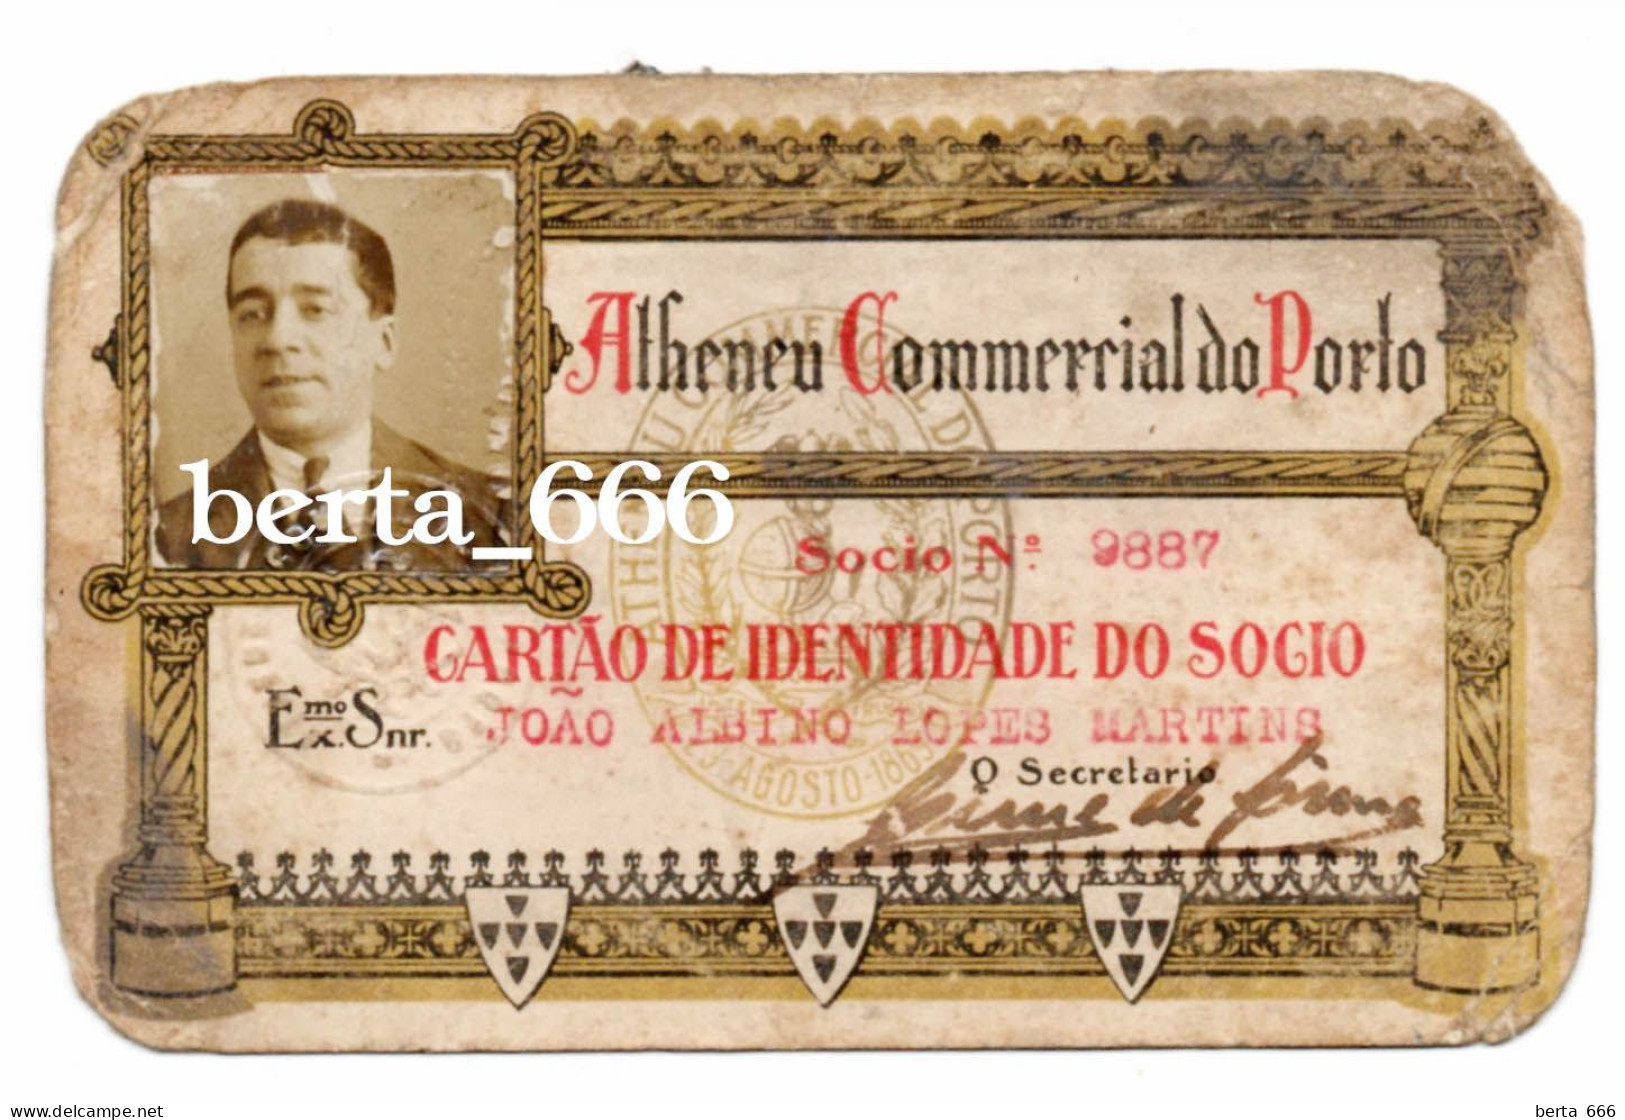 Ateneu Comercial Do Porto * Antigo Cartão De Indentidade De Sócio * Portugal Membership Card - Mitgliedskarten